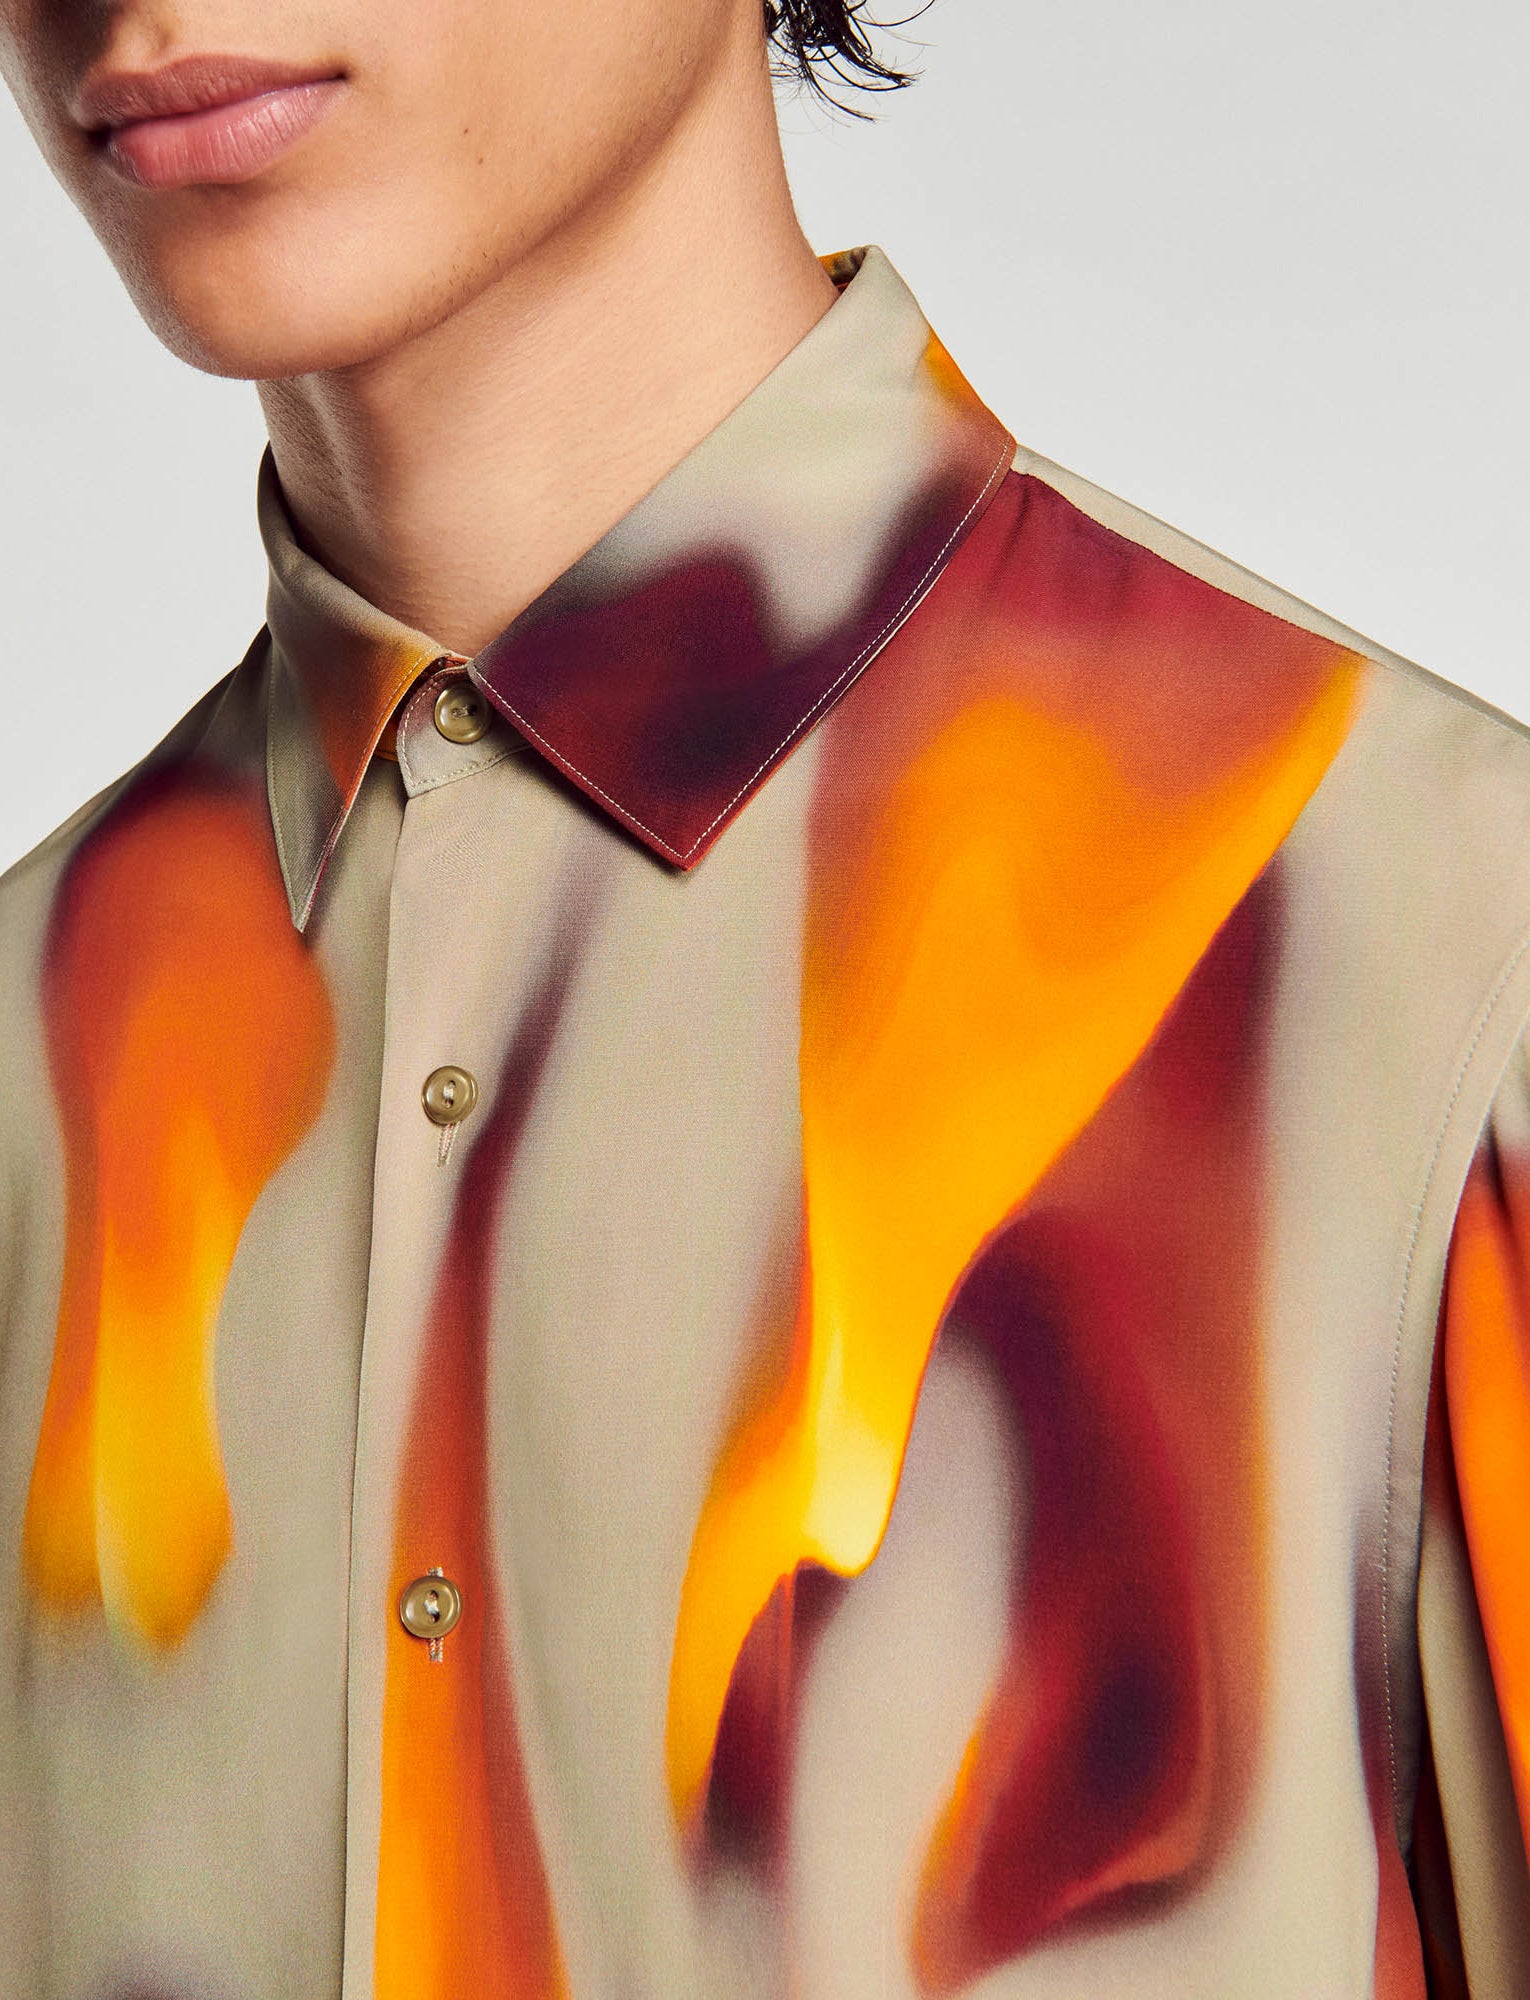 Camisa con estampado de llamas